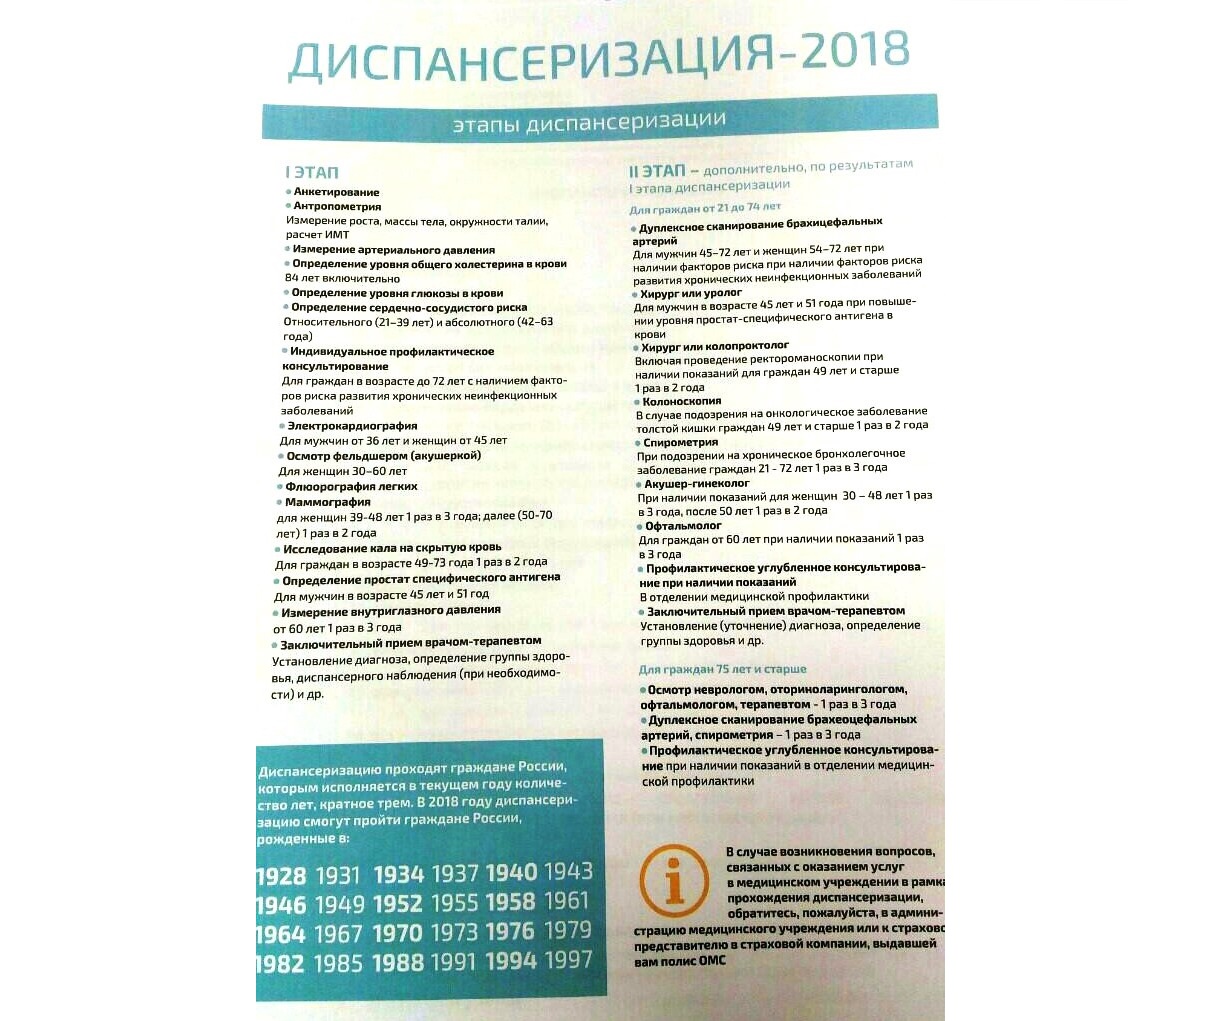 В 2019 году в России в программу диспансеризацию включат ежегодные профосмотры